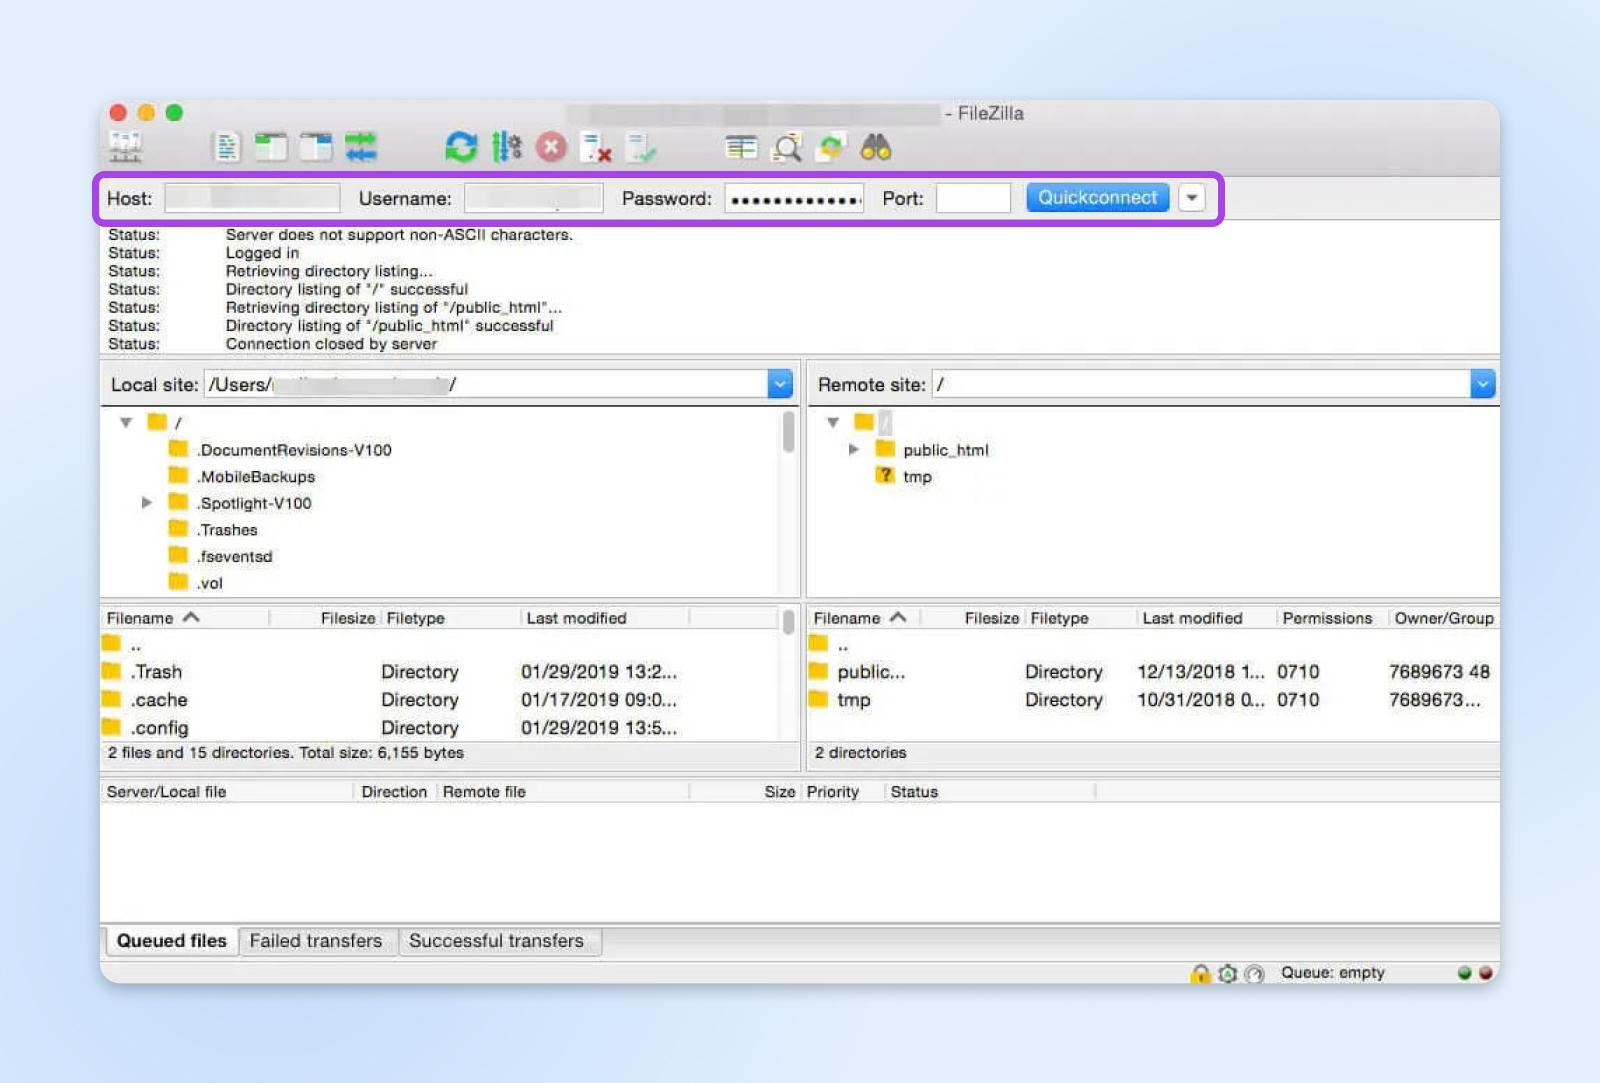 Interfaz FTP de FileZilla con la opción "Quickconnect" resaltada y estado de la conexión, estructuras de directorios remotos locales.